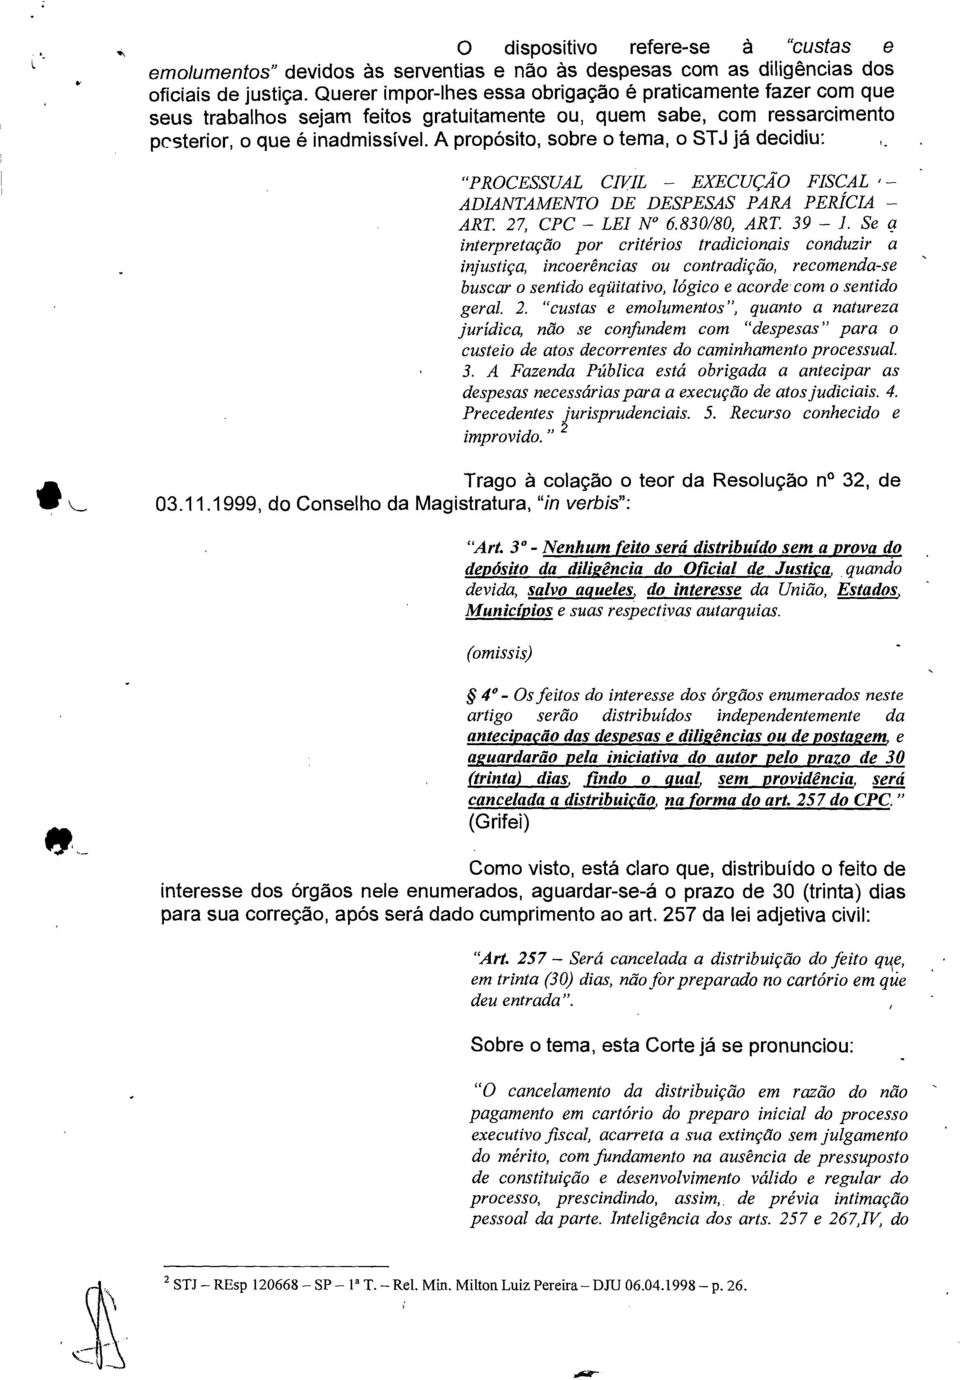 A propósito, sobre o tema, o STJ já decidiu: "PROCESSUAL CIVIL EXECUÇÃO FISCAL ADIANTAMENTO DE DESPESAS PARA PERÍCIA ART. 27, CPC LEI N 6.830/80, ART. 39 1.